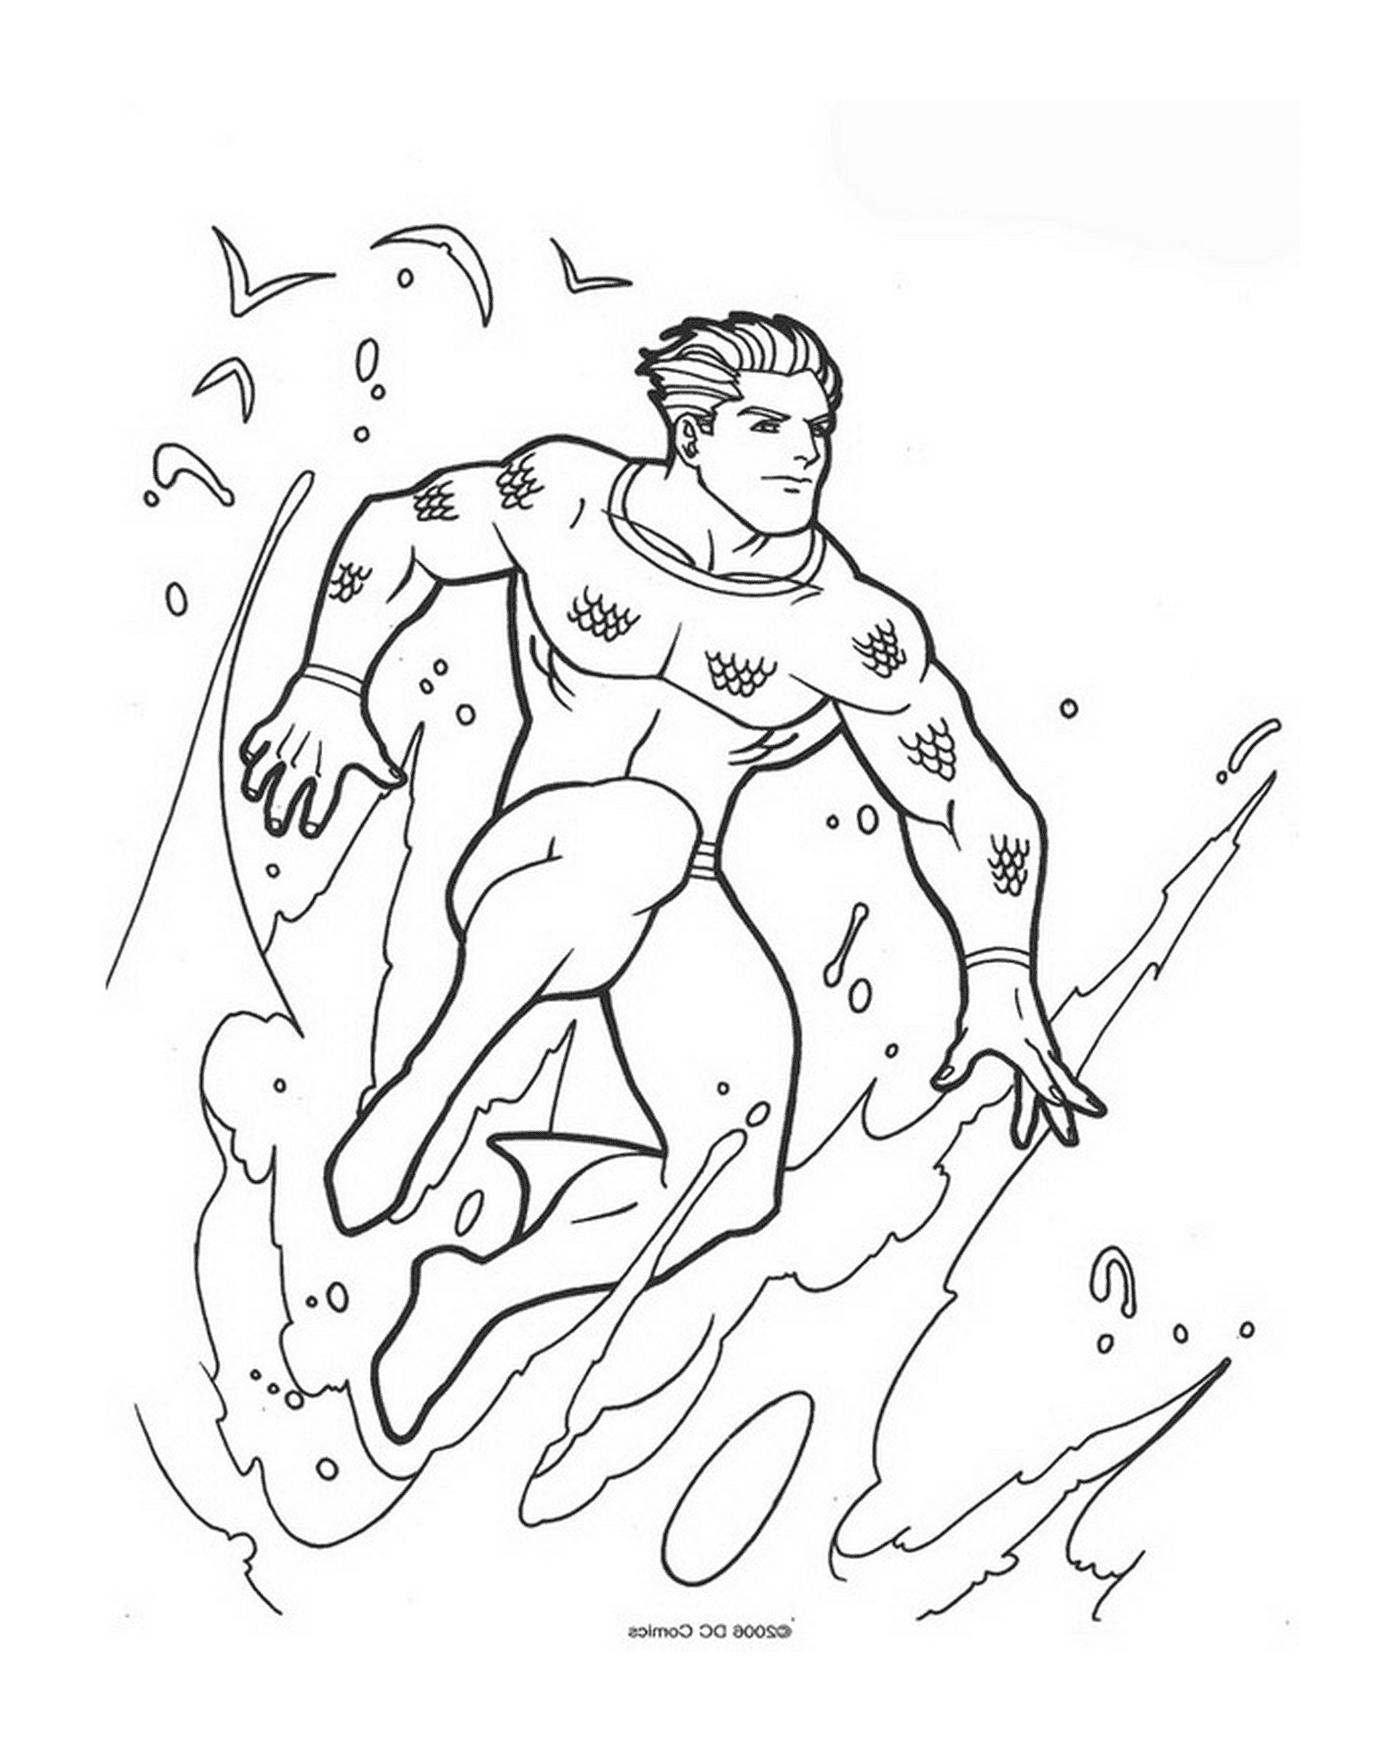  Imagem de um homem em um traje de mergulho que sai do mar 